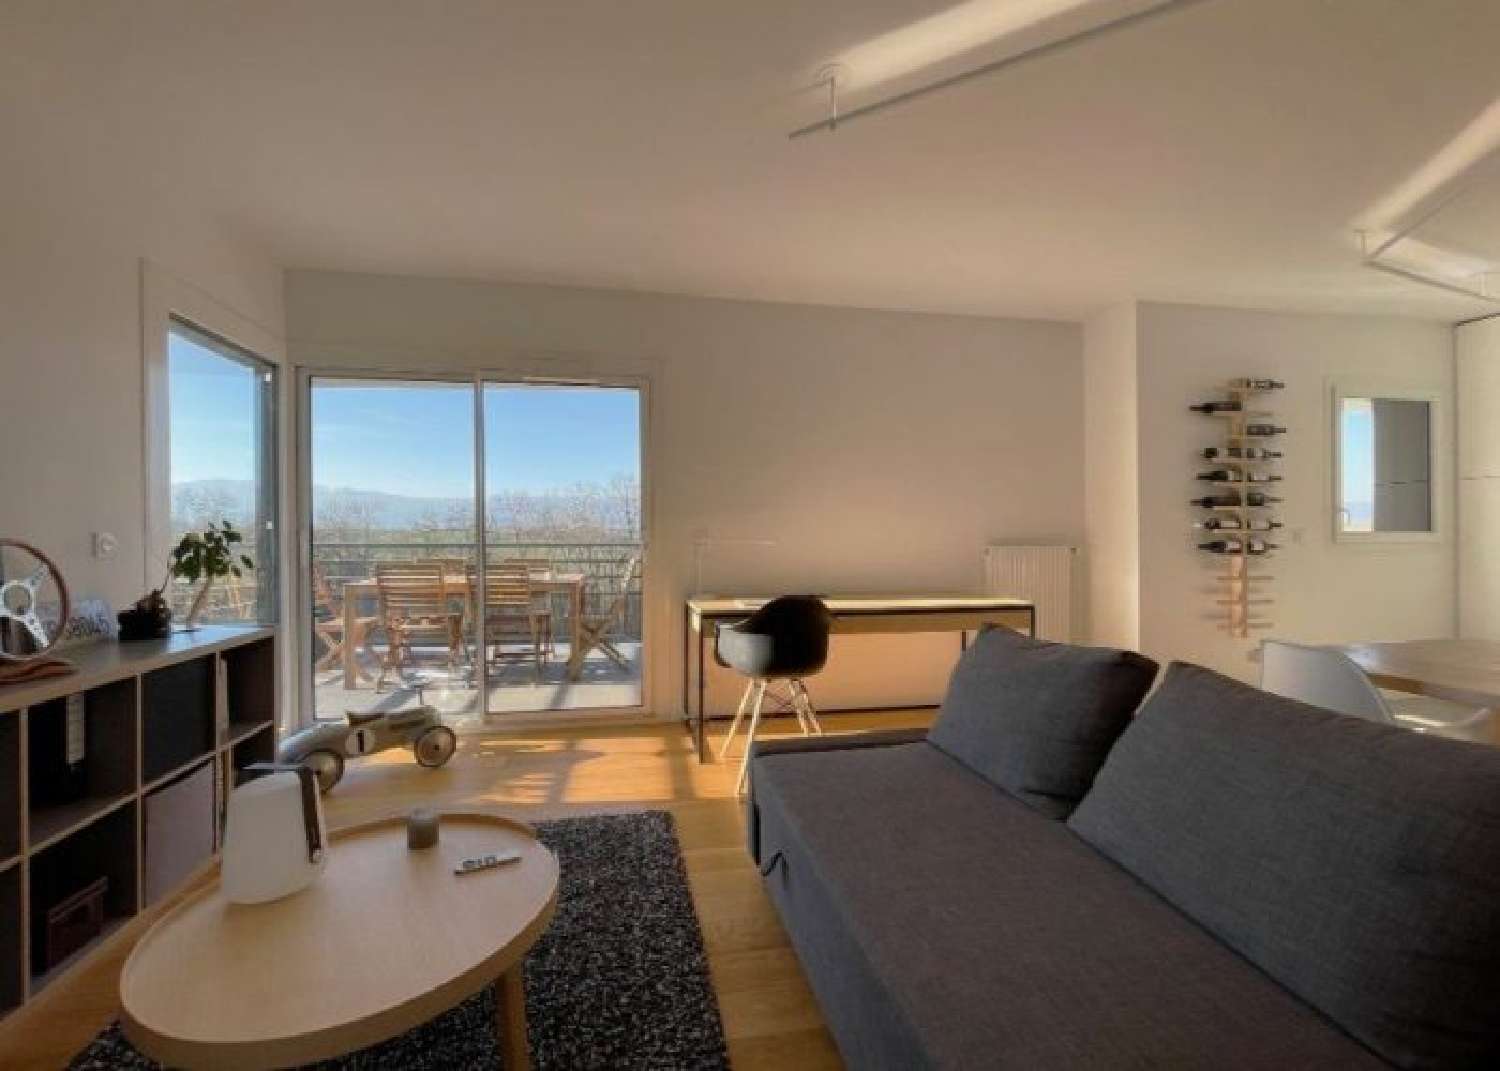 Saint-Julien-en-Genevois Haute-Savoie Wohnung/ Apartment Bild 6825240